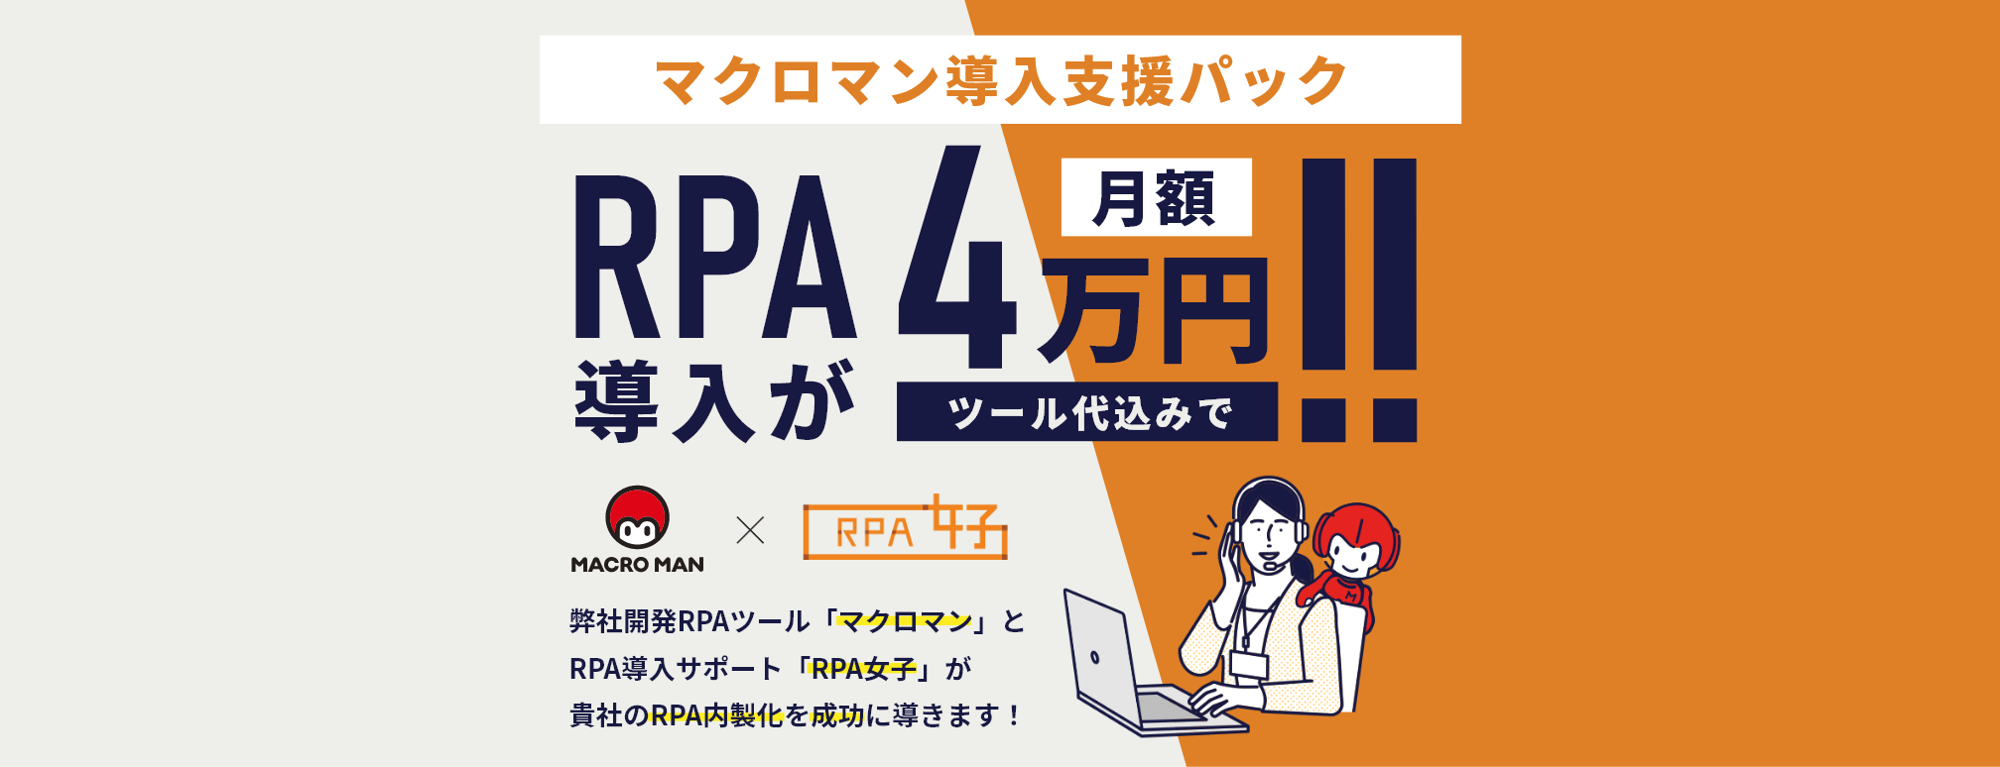 マクロマン導入支援パック ツール代込みでRPA導入が月額4万円 弊社開発RPAツールマクロマンとRPA導入サポートRPA女子が貴社のRPA内製化を成功に導きます